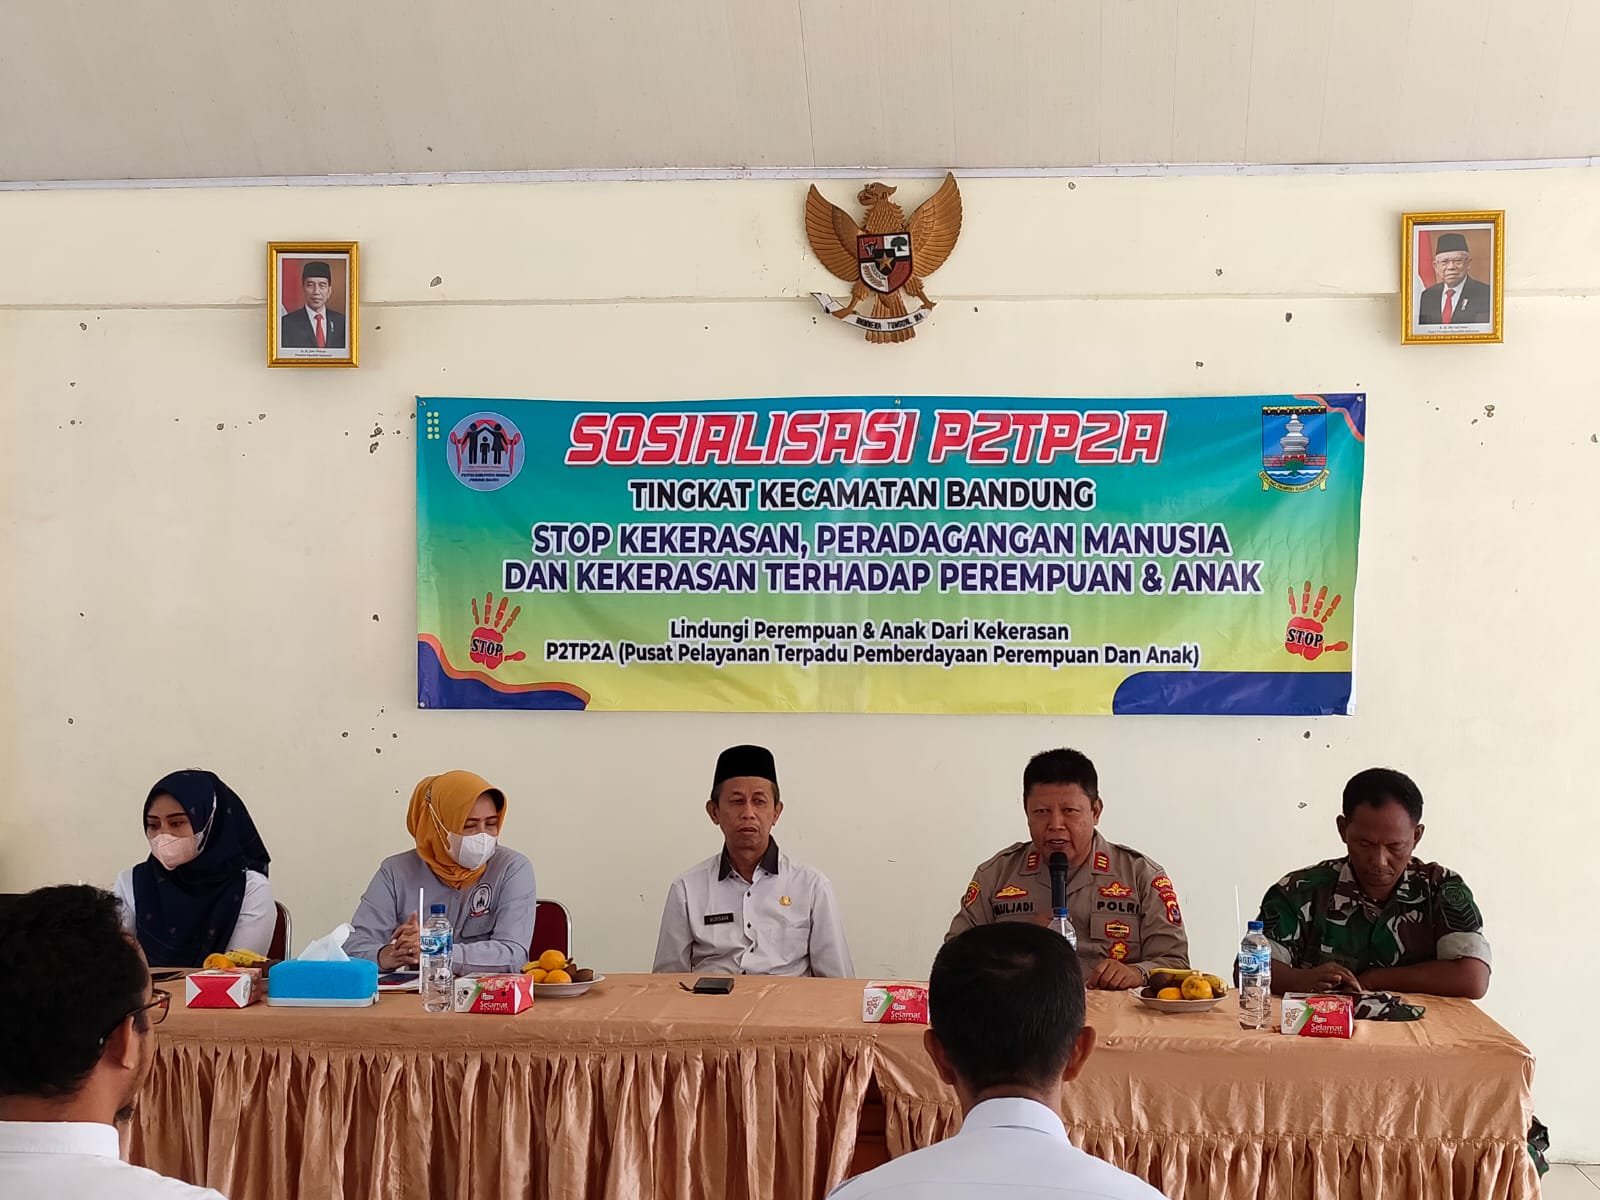 Kapolsek Pamarayan polres serang Hadiri Giat Solialisasi P2TP2A Tingkat kecamatan Bandung